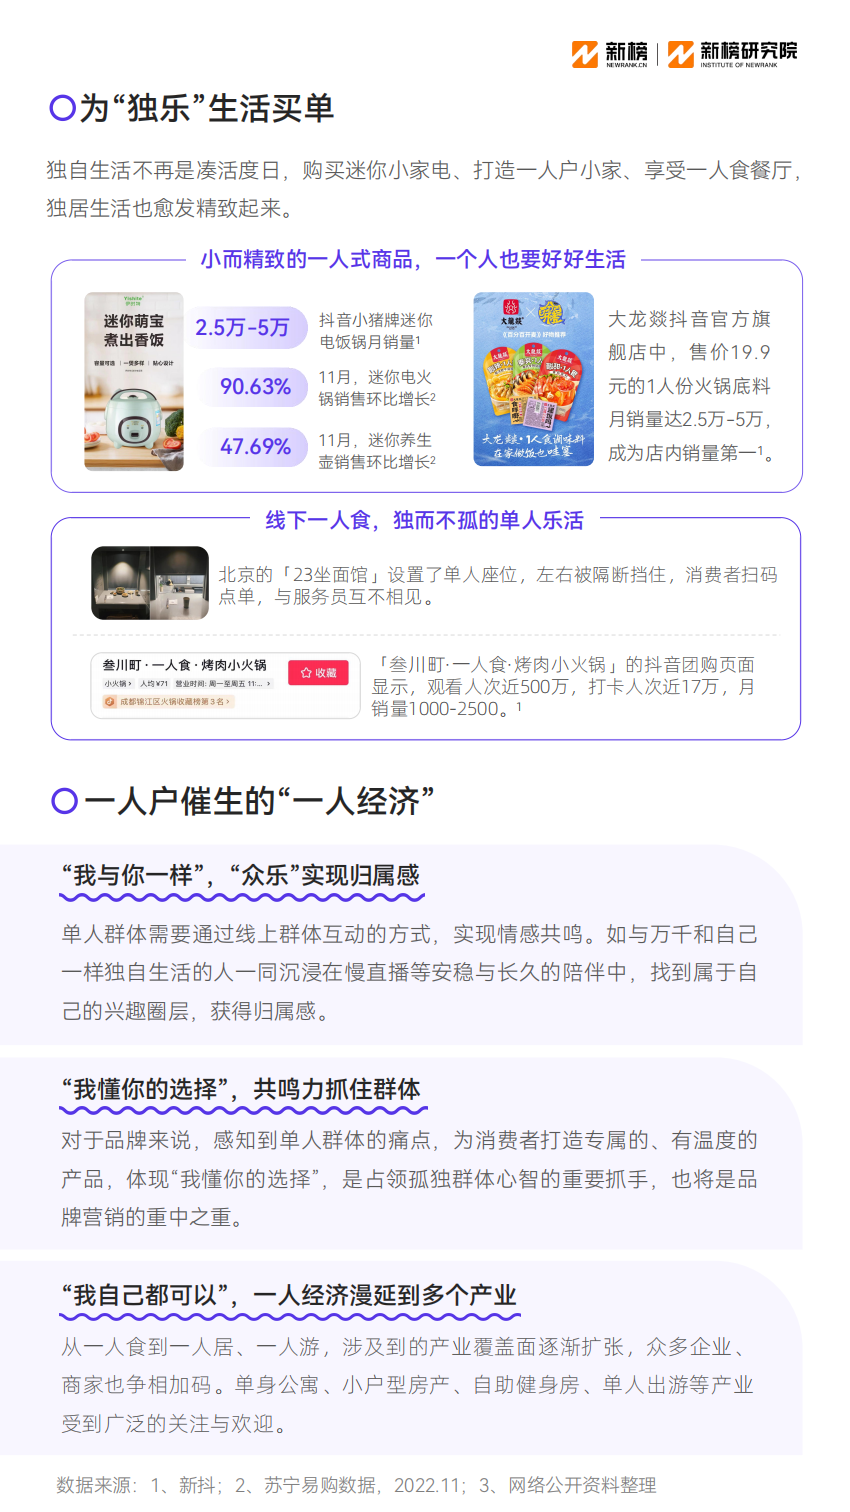 【新榜研究院】2023消费趋势报告 (1) (1) (1)_23.png